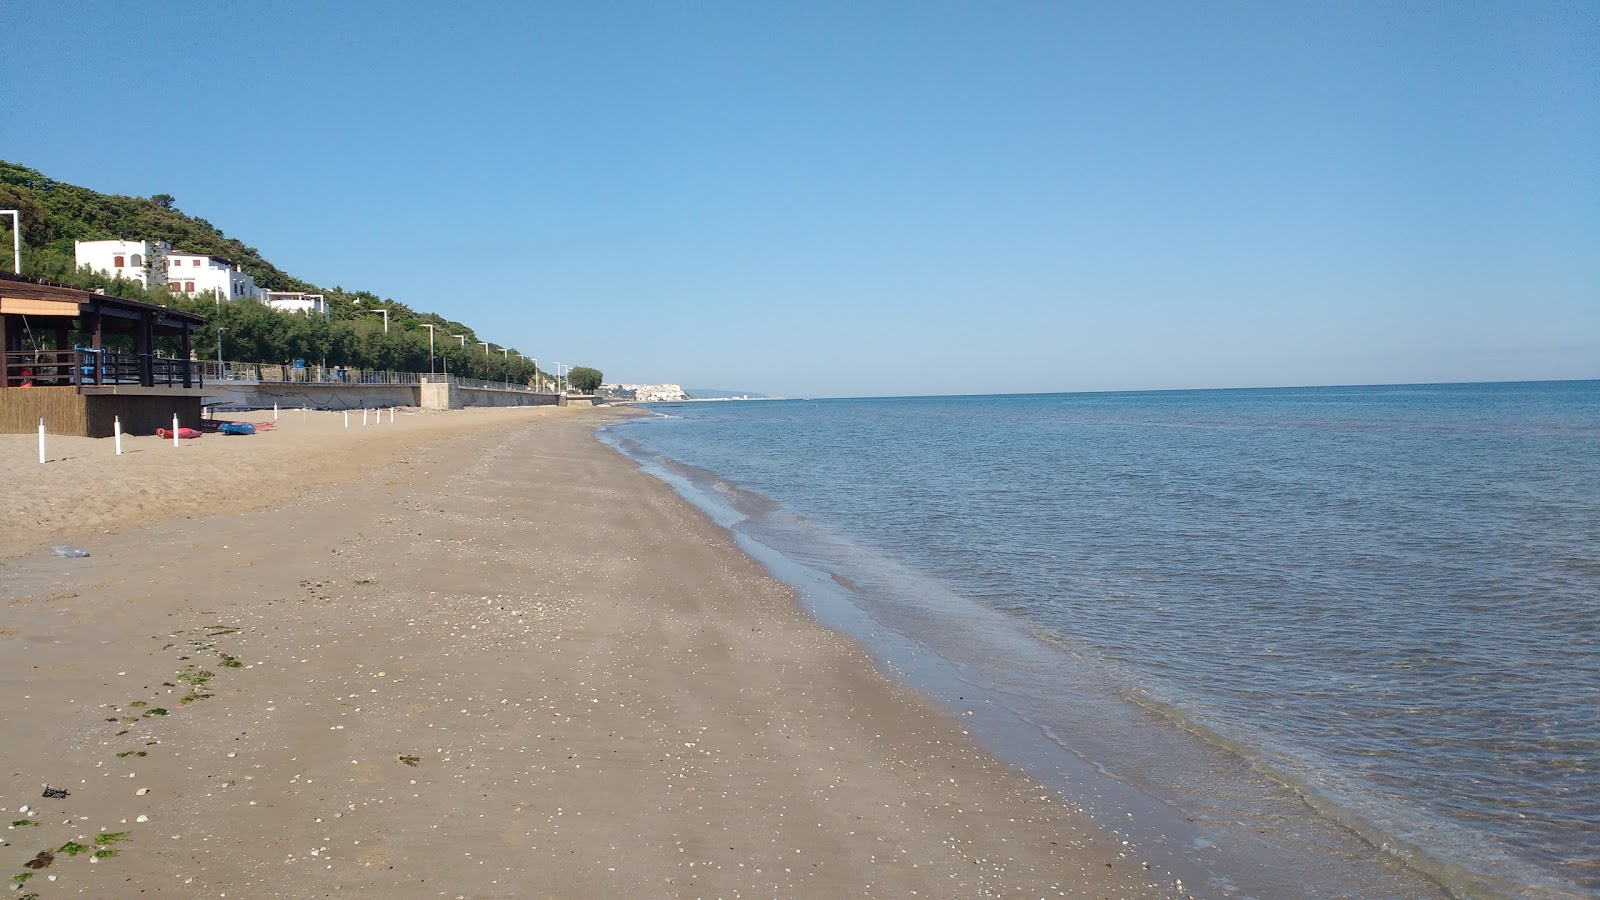 Zdjęcie Spiaggia di San Menaio z powierzchnią brązowy piasek